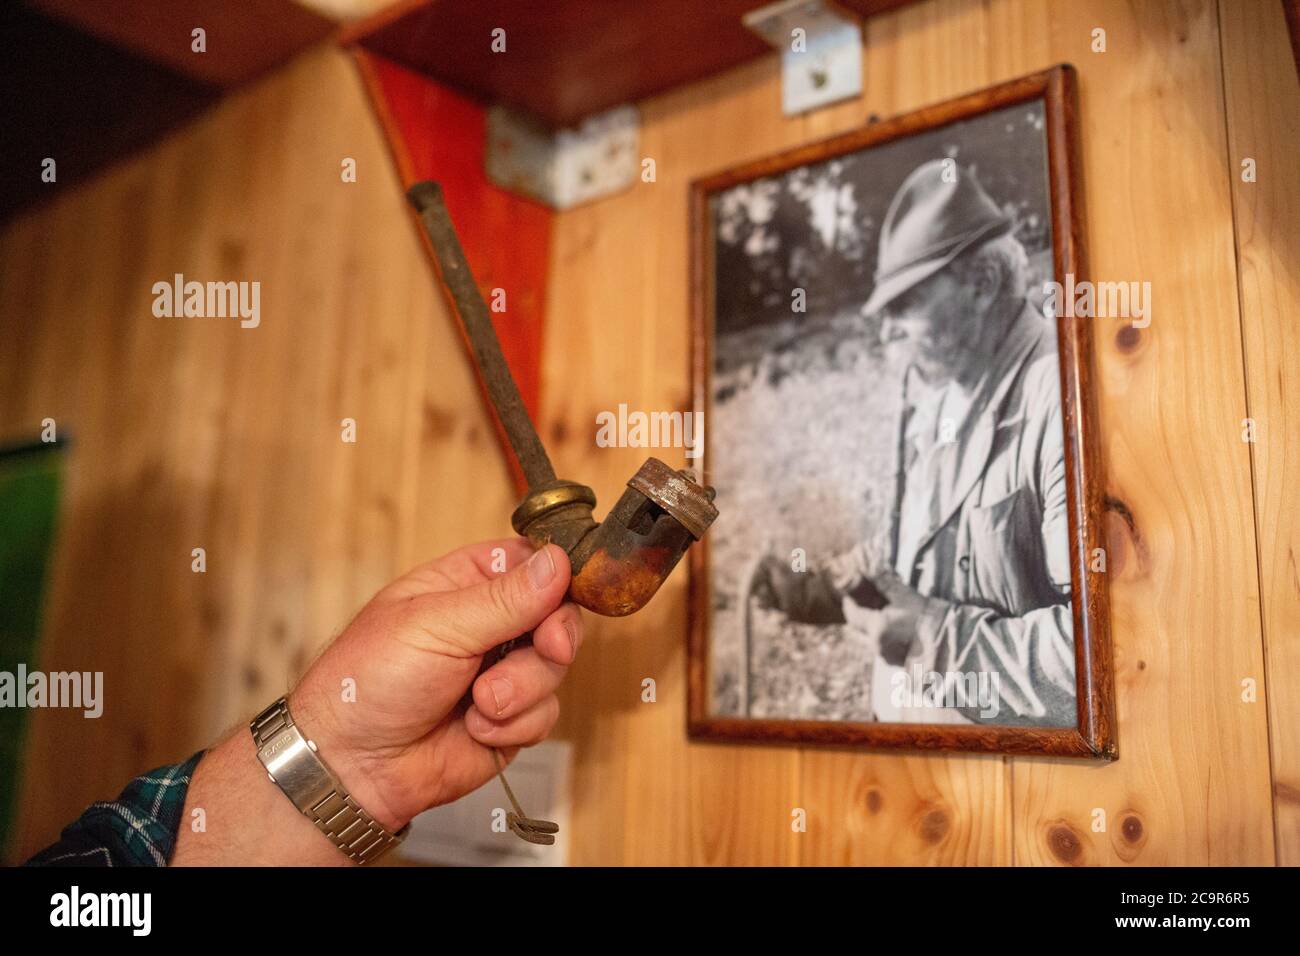 Hirte hält eine Pfeife, die früher seinem Großvater gehörte (siehe Archivfoto an der Wand), in seinem Haus im ländlichen Ungarn Stockfoto